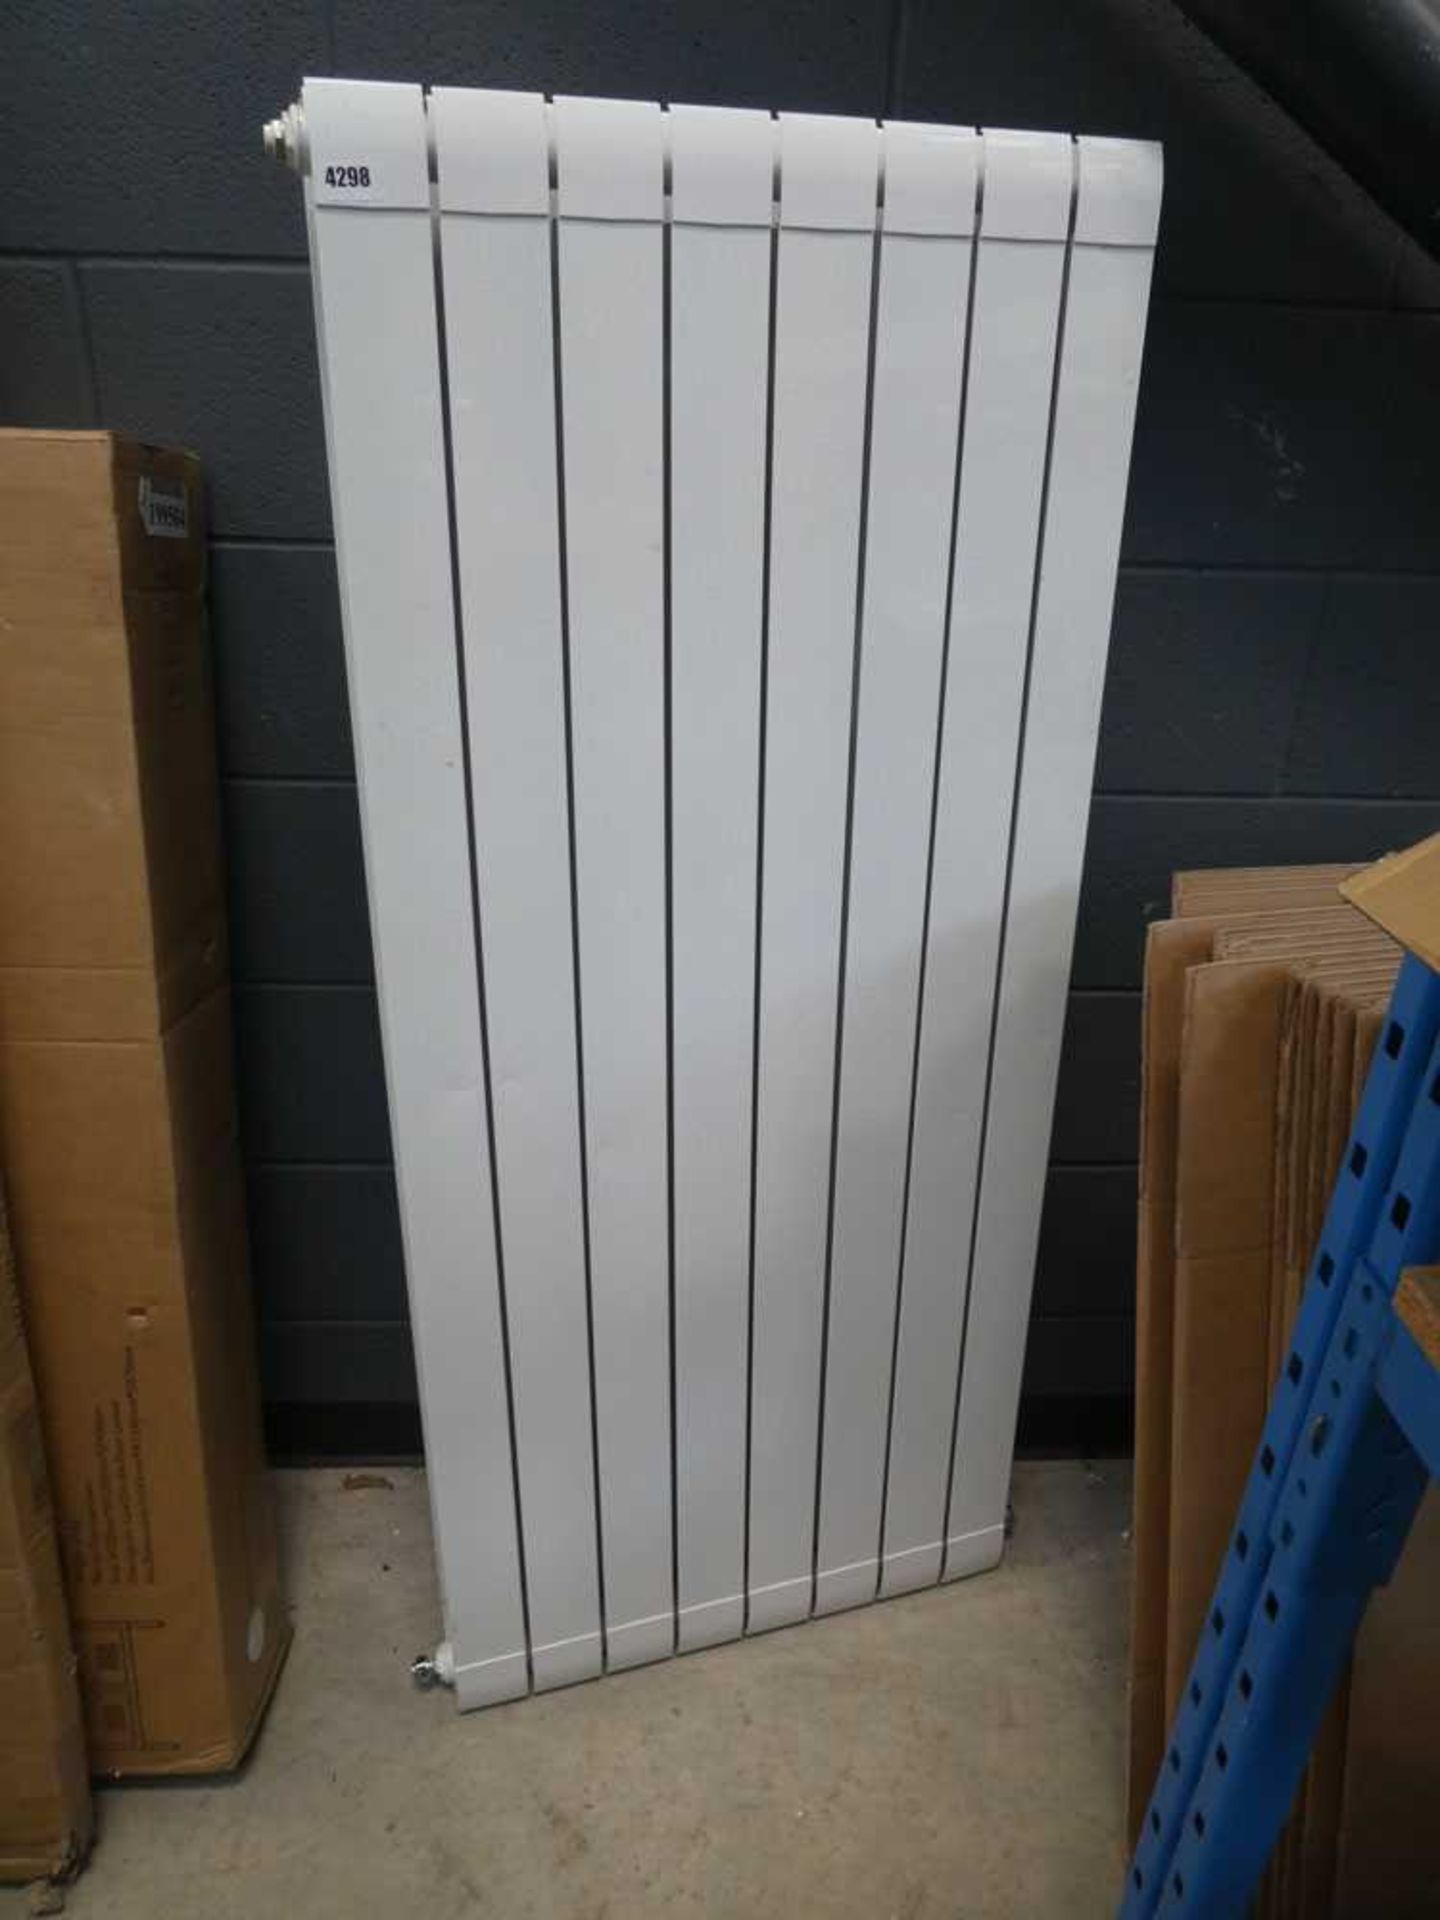 Thermal panelled white radiator